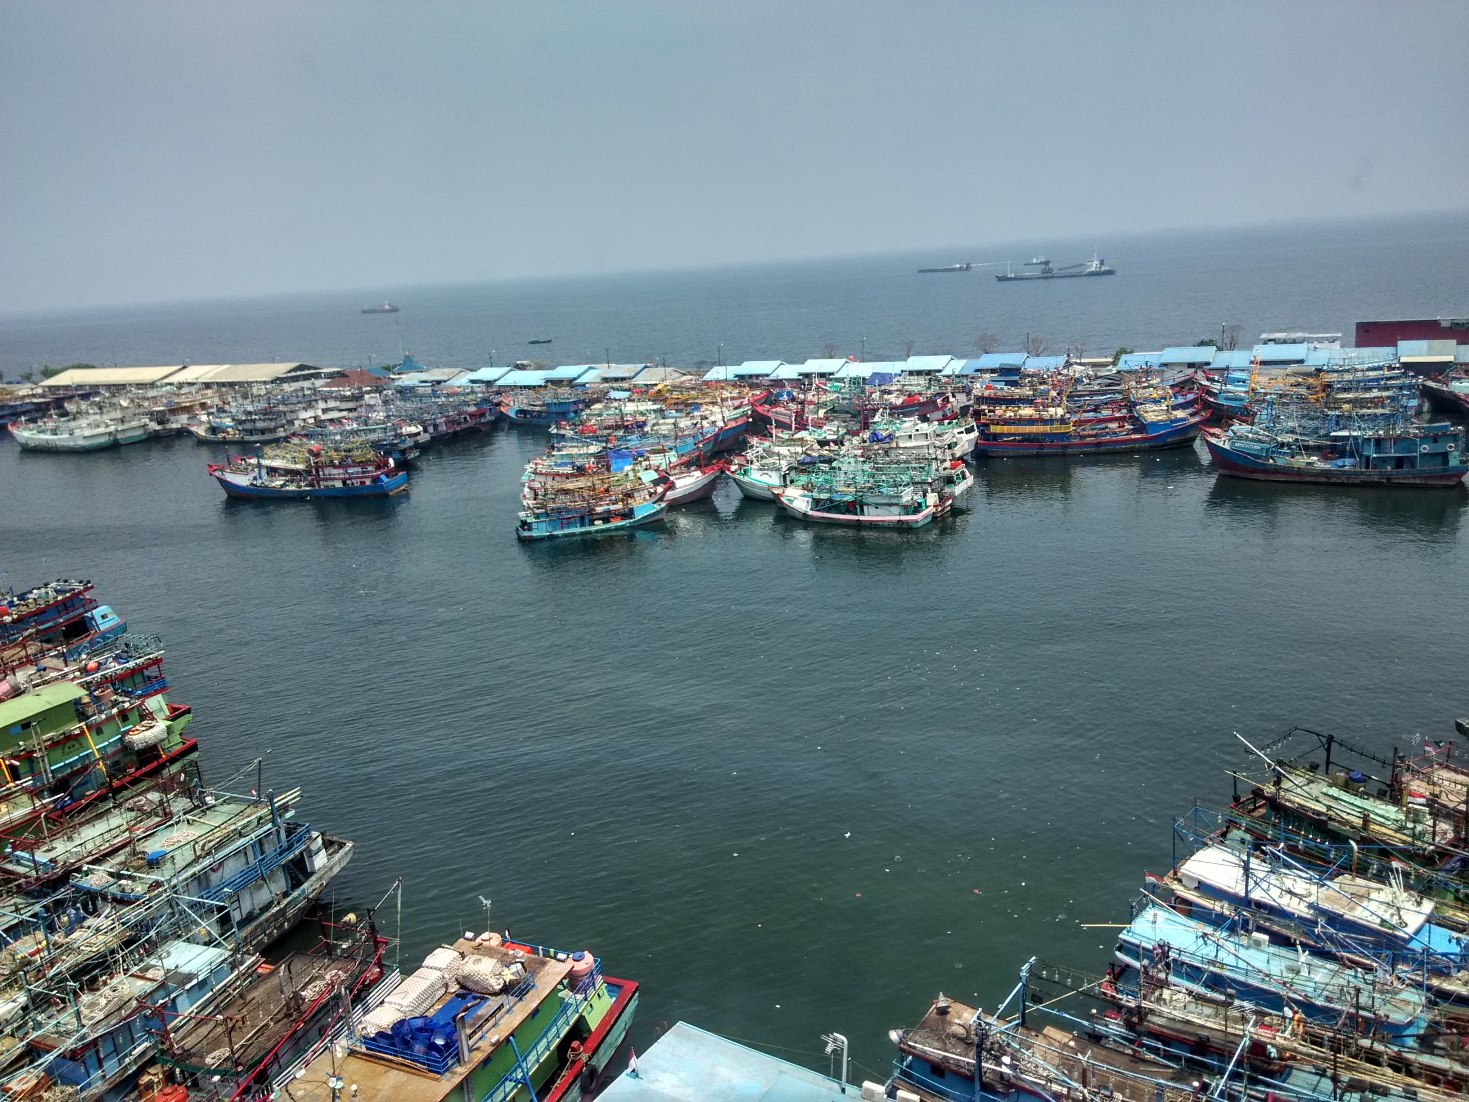 Puluhan kapal penangkap ikan yang bersandar di di Pelabuhan Perikanan Nizam Zachman Muara Baru, Jakarta Utara pada Selasa (19/01/2016) siang. Kapal-kapal tersebut tidak beroperasi karena tidak mempunyai izin atau sedang mengurus izin melaut dari KKP. Foto : M Ambari